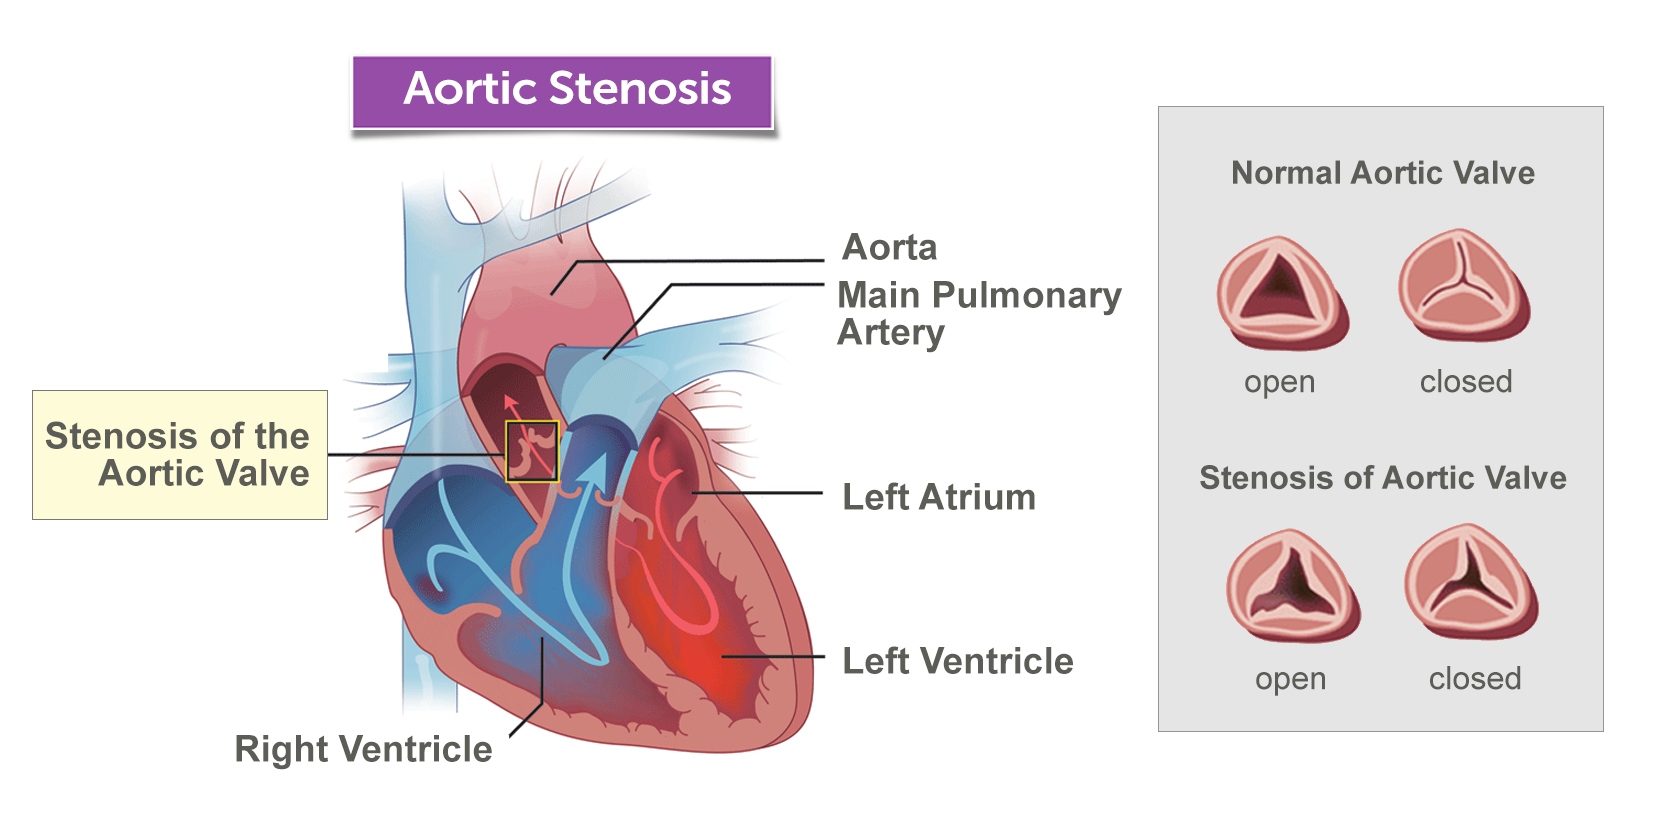 “aortic